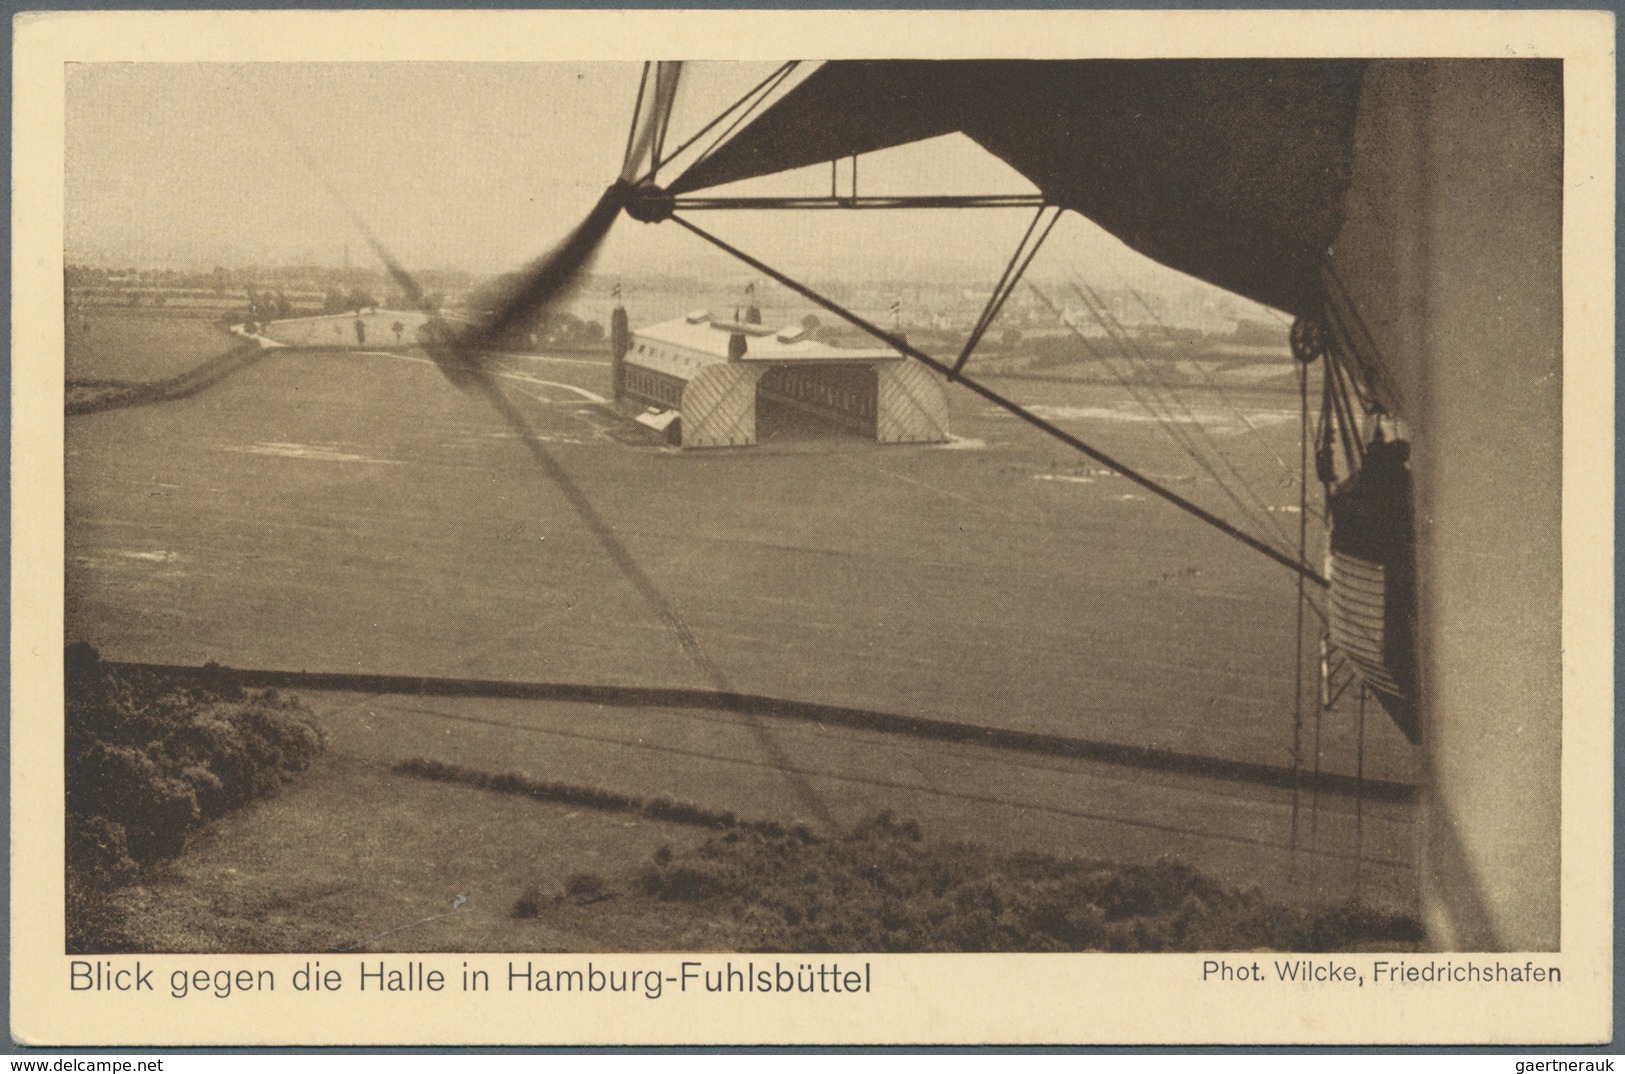 Zeppelinpost Deutschland: 1912, FUHLSBÜTTEL FLUGPLATZ 13.7.12, seltener Stempel auf Soldatenkarte o.